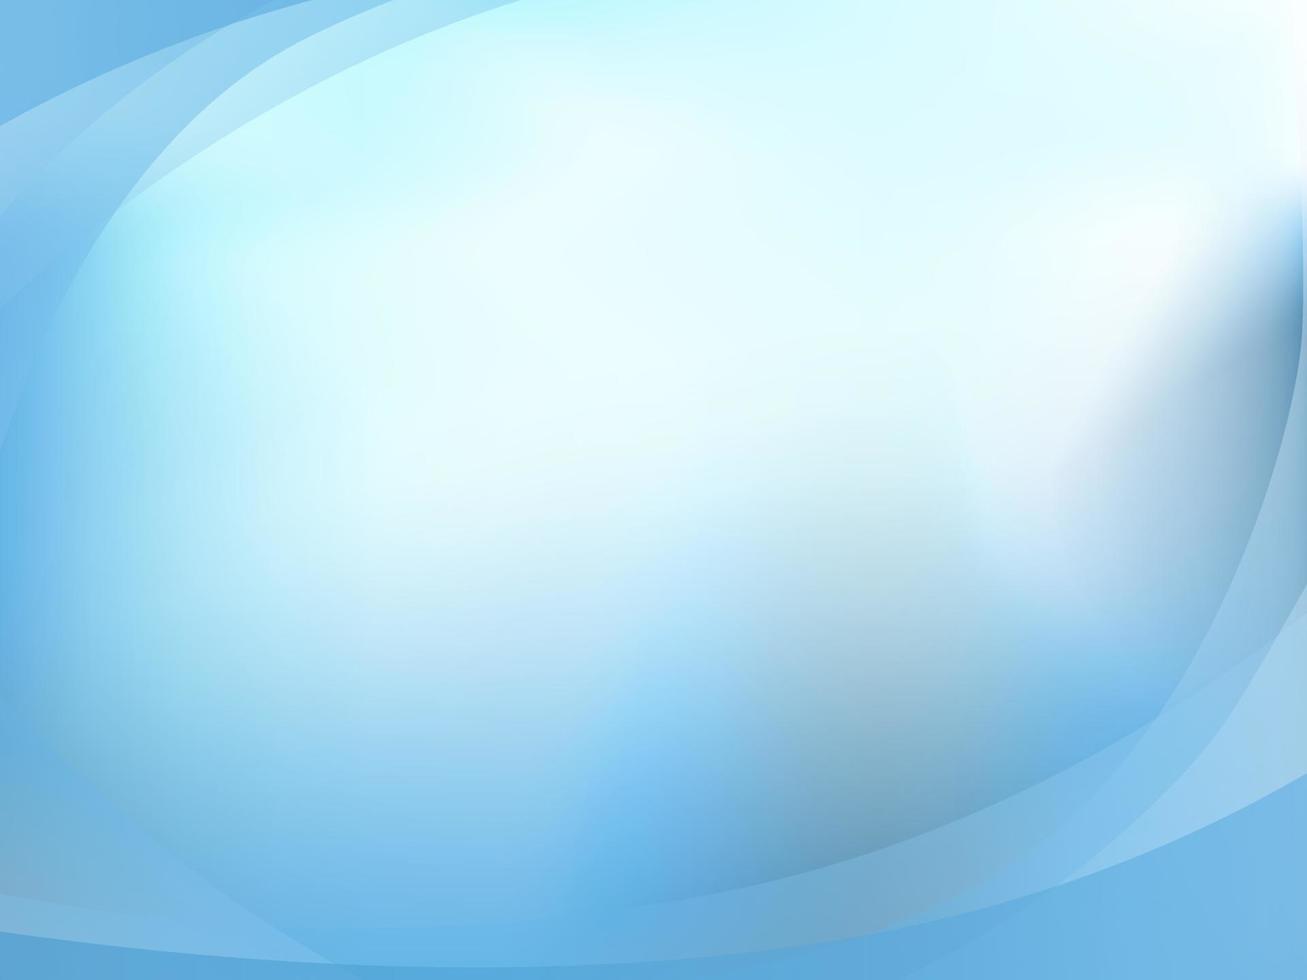 fond bleu clair avec vecteur ovale de forme, fond d'écran modèle bleu dégradé